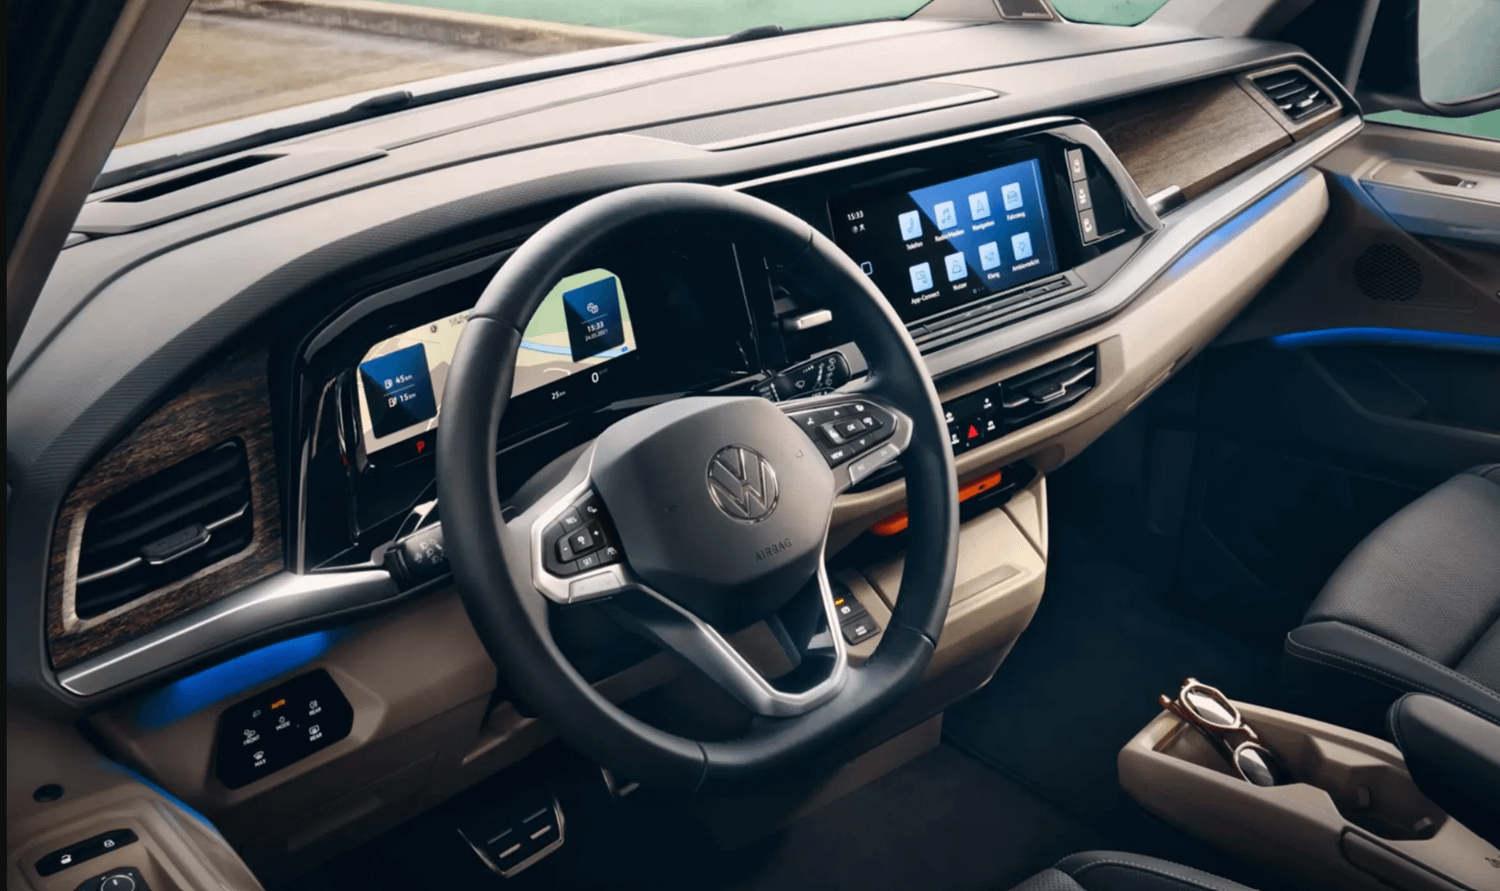 New Volkswagen Multivan interior